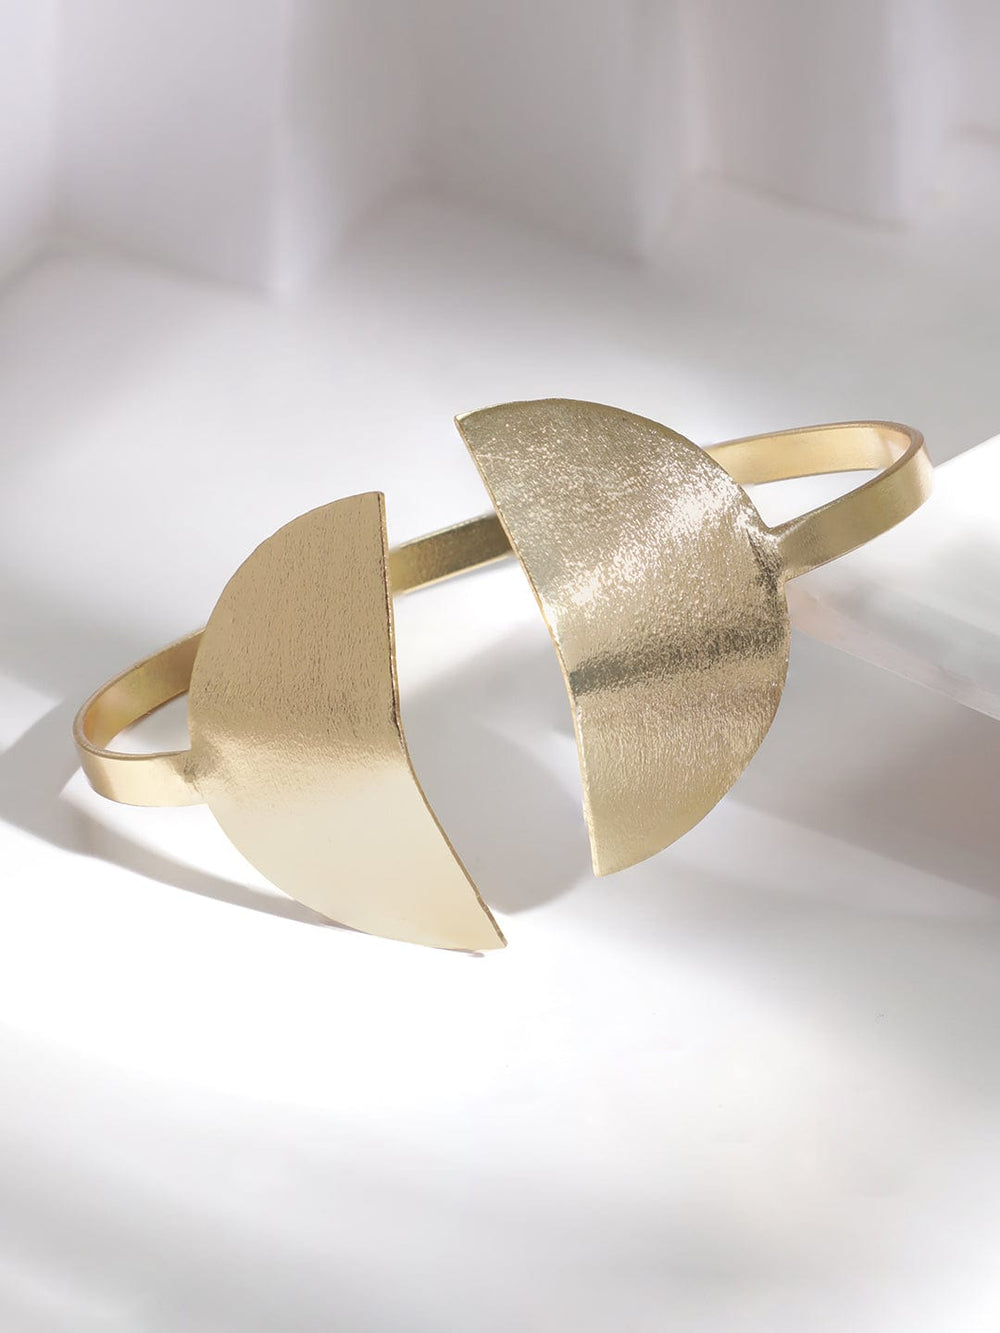 Rubans Stainless Steel 18 KT Gold Plated Waterproof , Tarnish Free Heart Bracelet Bracelet